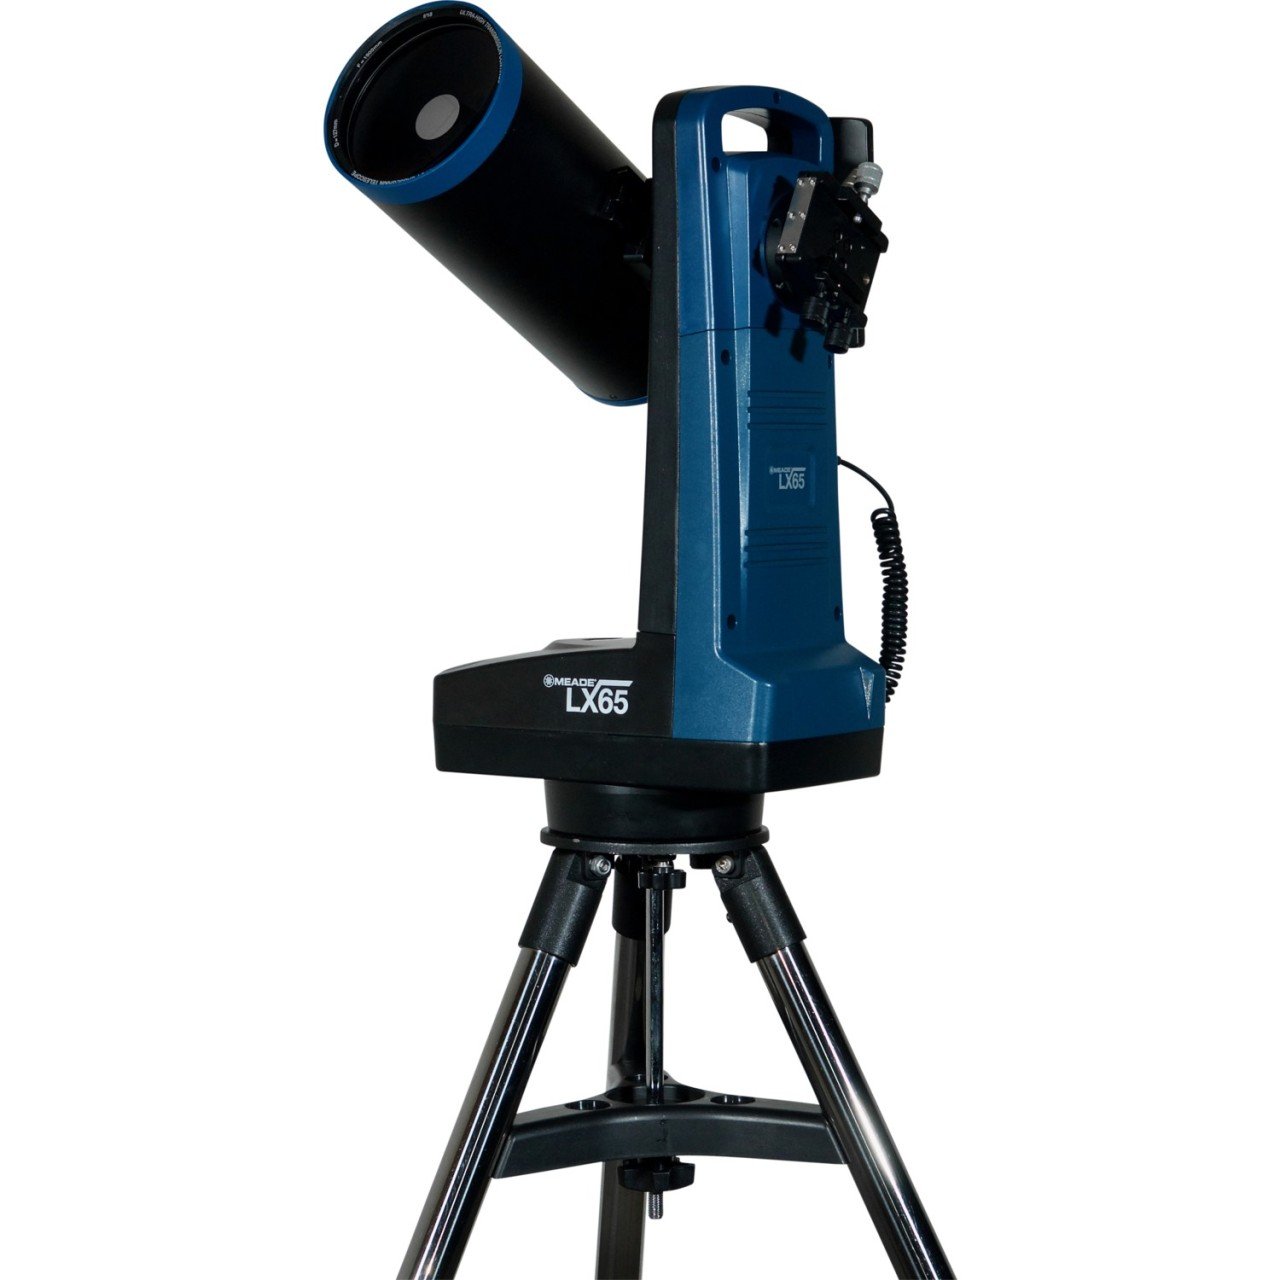 Meade Lx65 5'' Maksutov Cassegrain Teleskop